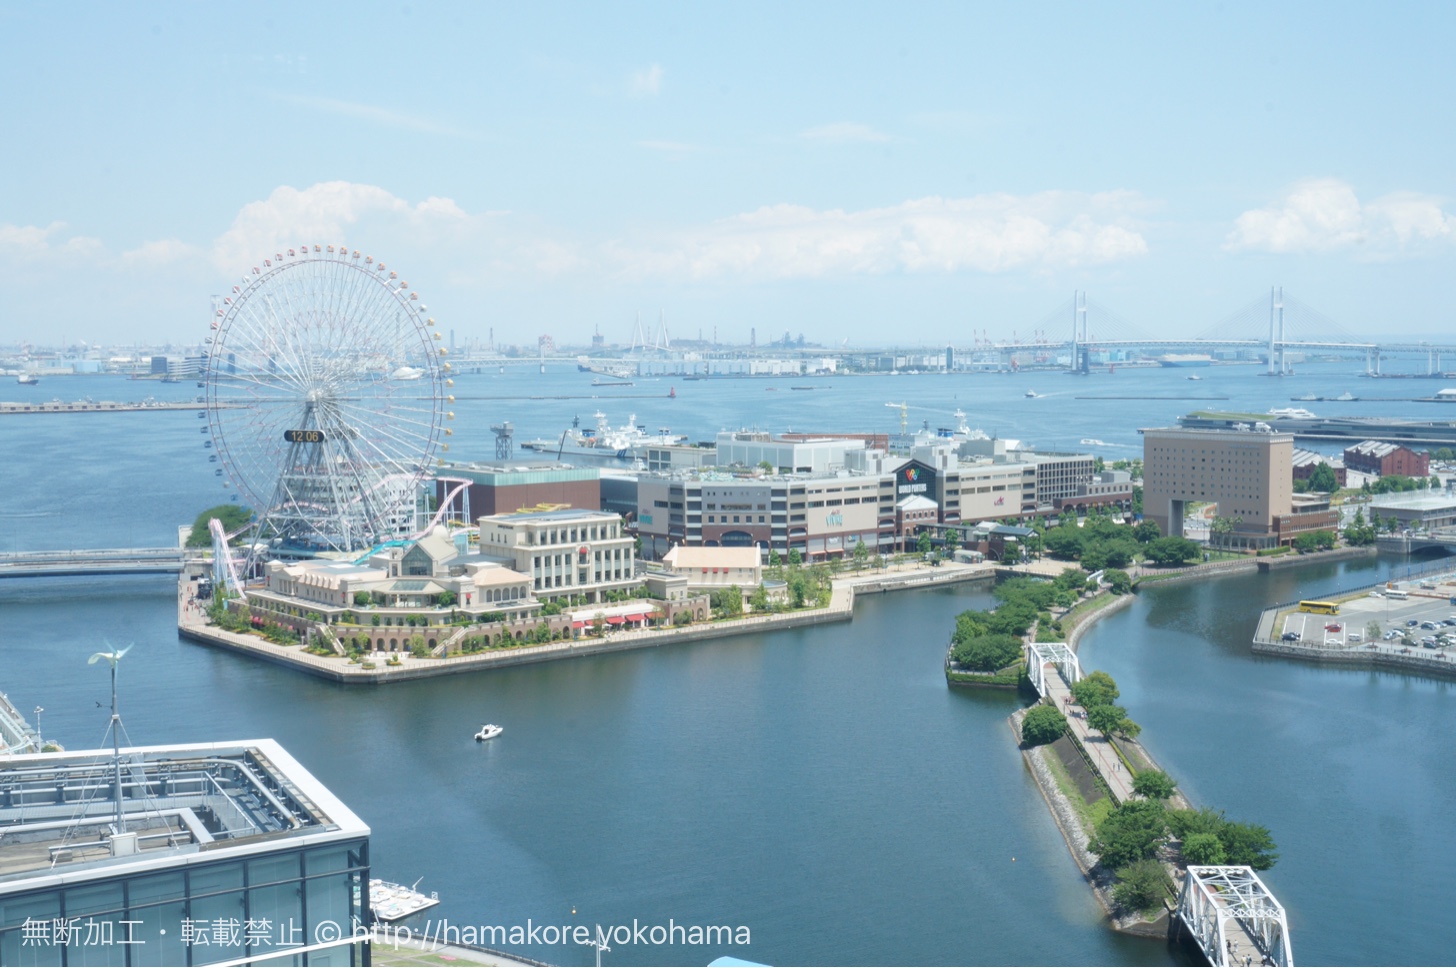 横浜モノリスの席から見た横浜の景色